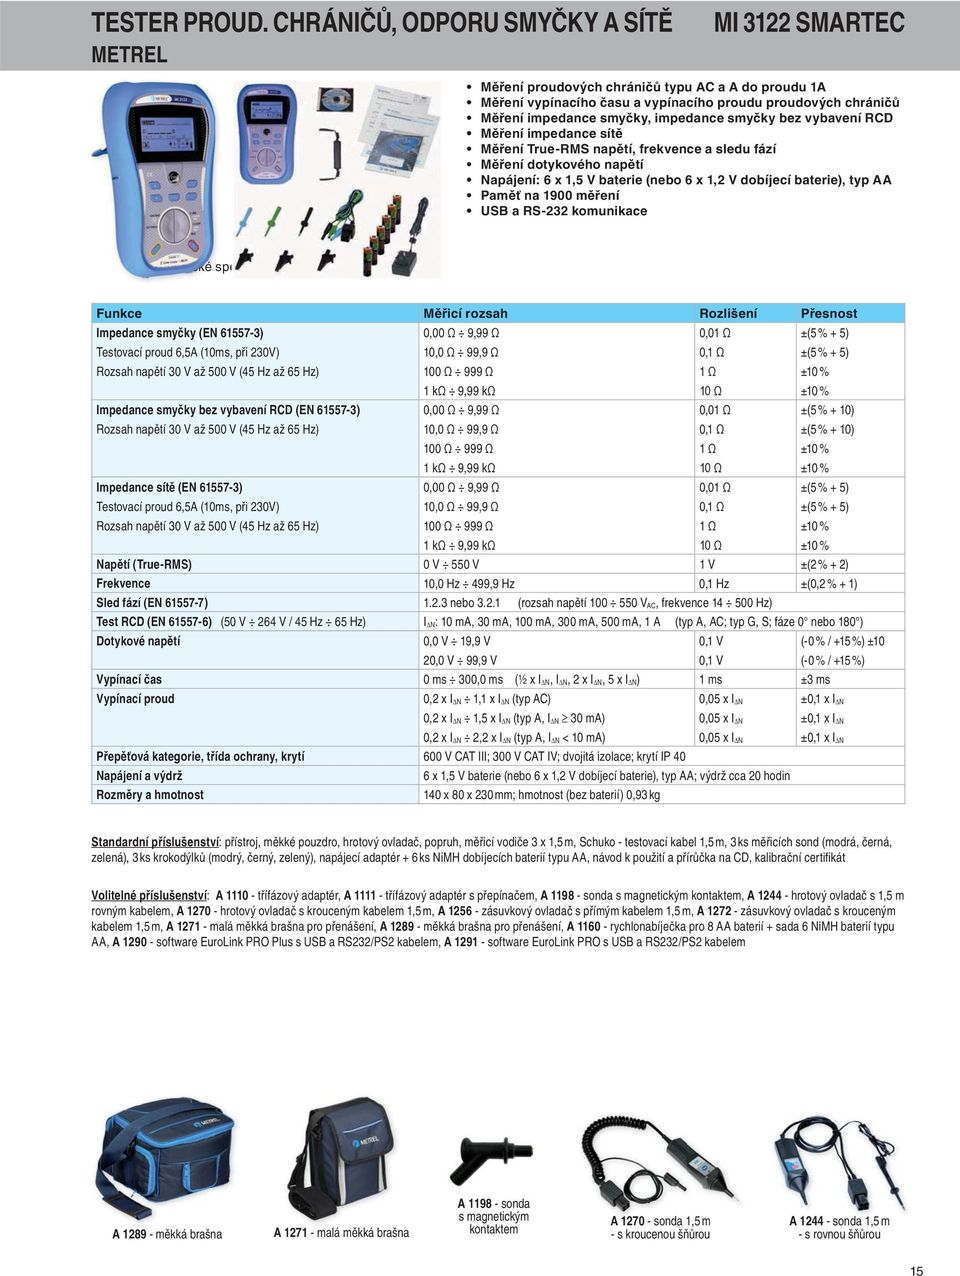 impedance smyčky bez vybavení RCD Měření impedance sítě Měření True-RMS napětí, frekvence a sledu fází Měření dotykového napětí Napájení: 6 x 1,5 V baterie (nebo 6 x 1,2 V dobíjecí baterie), typ AA